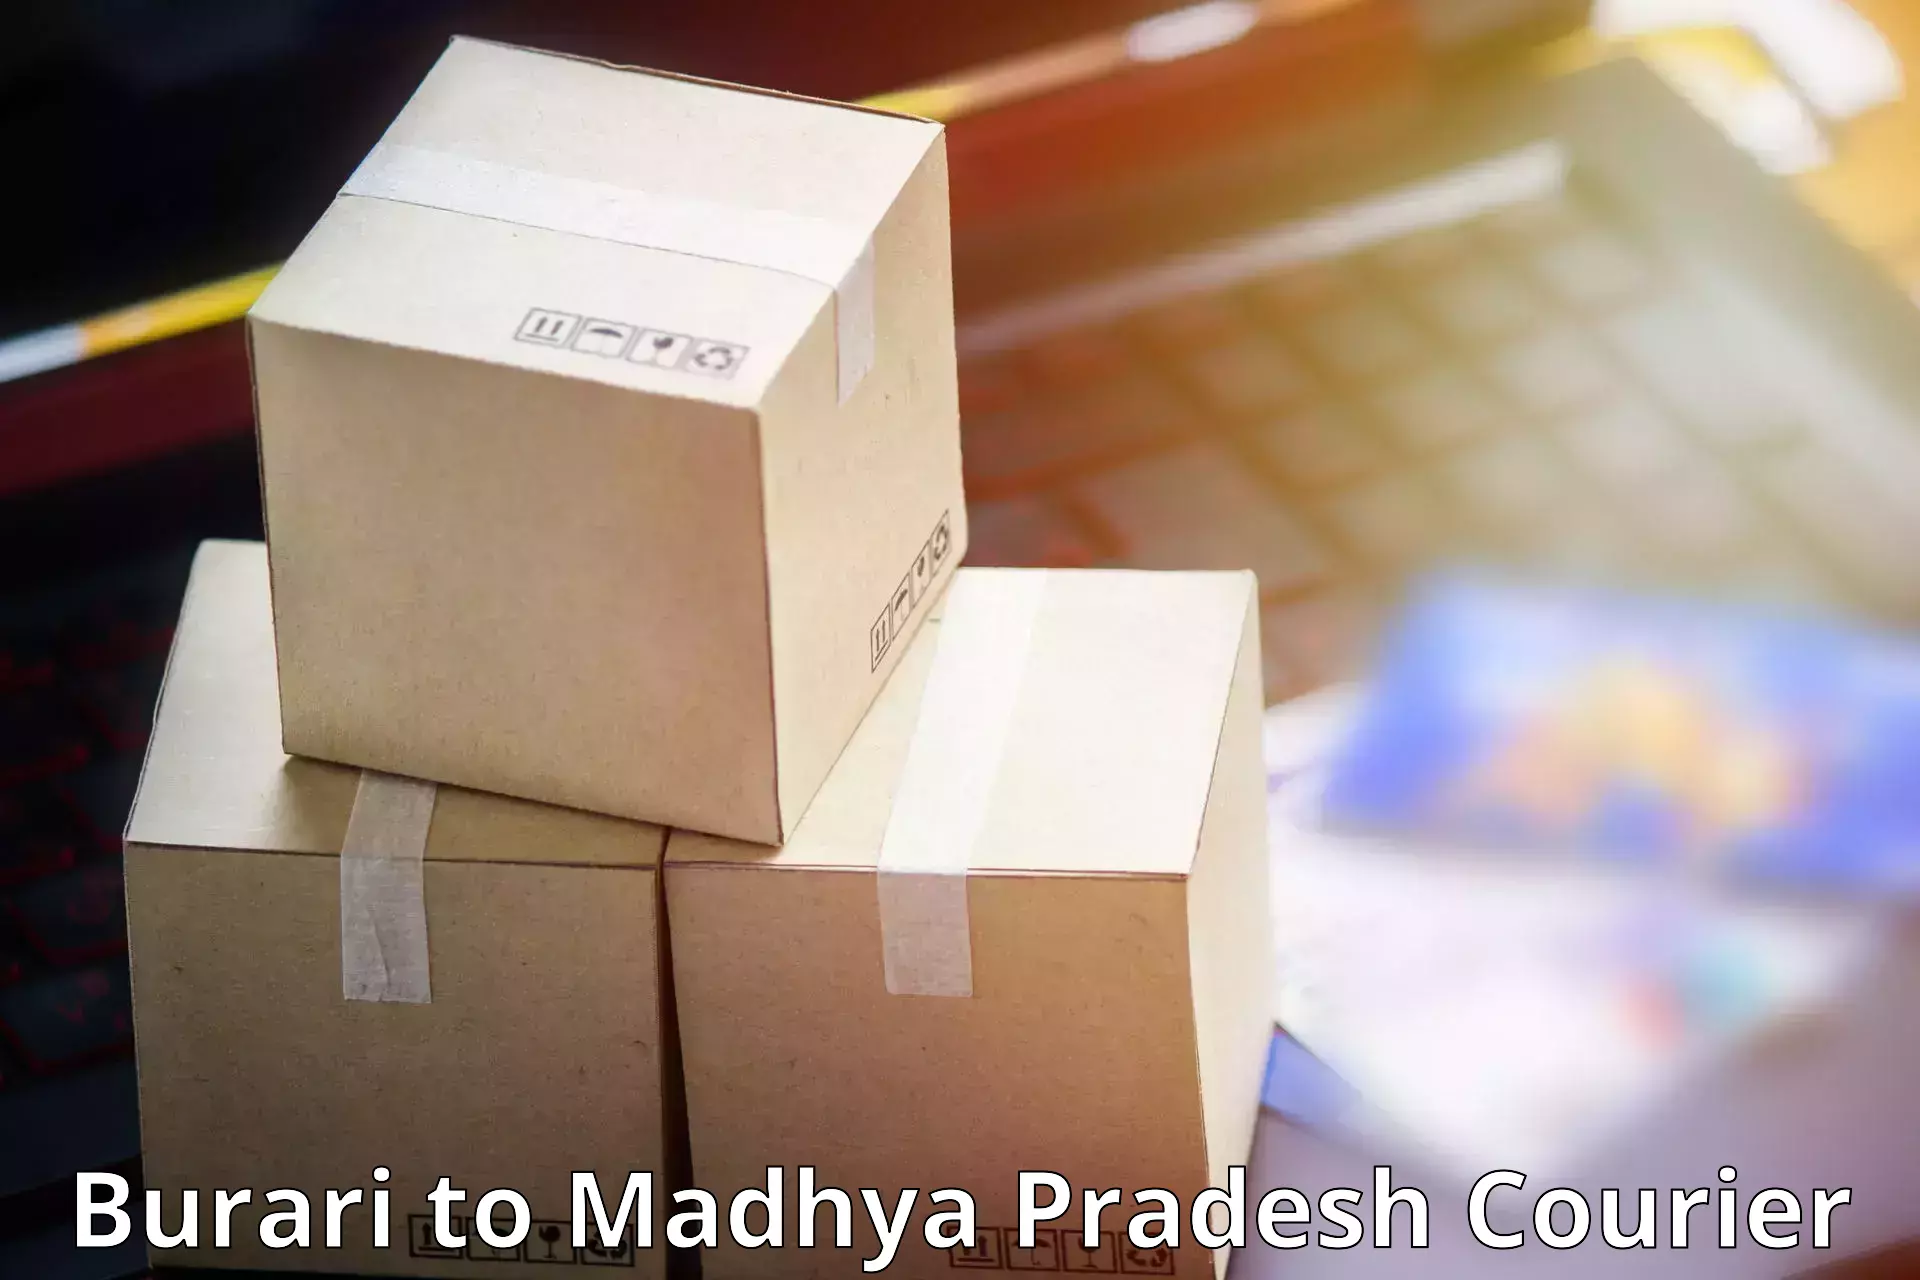 Versatile courier offerings Burari to Lavkush Nagar